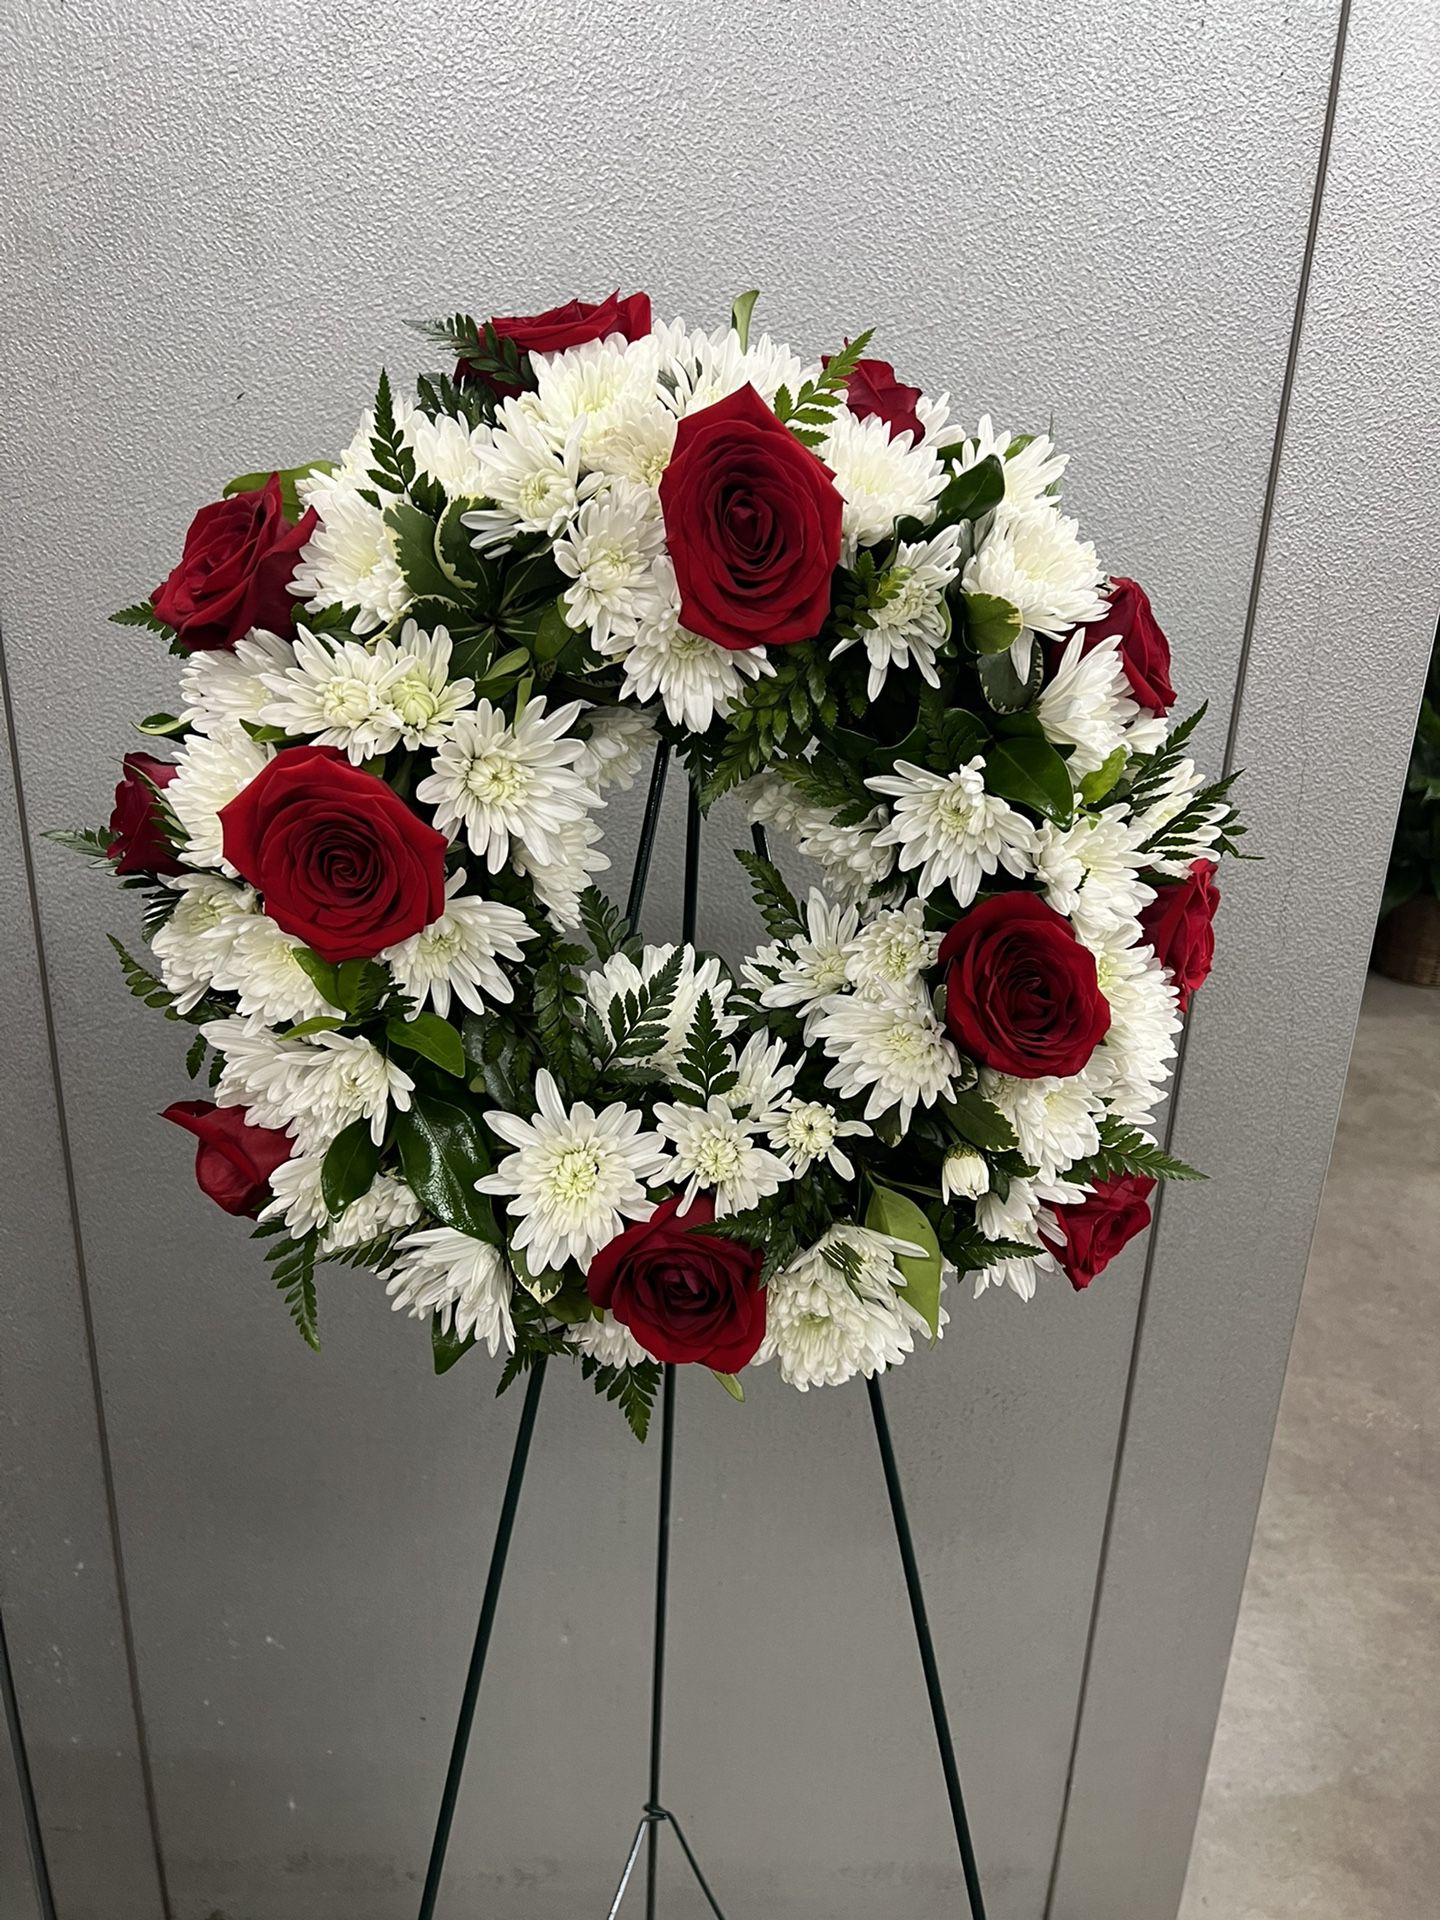 Corona Para Velorio/funeral Wreath